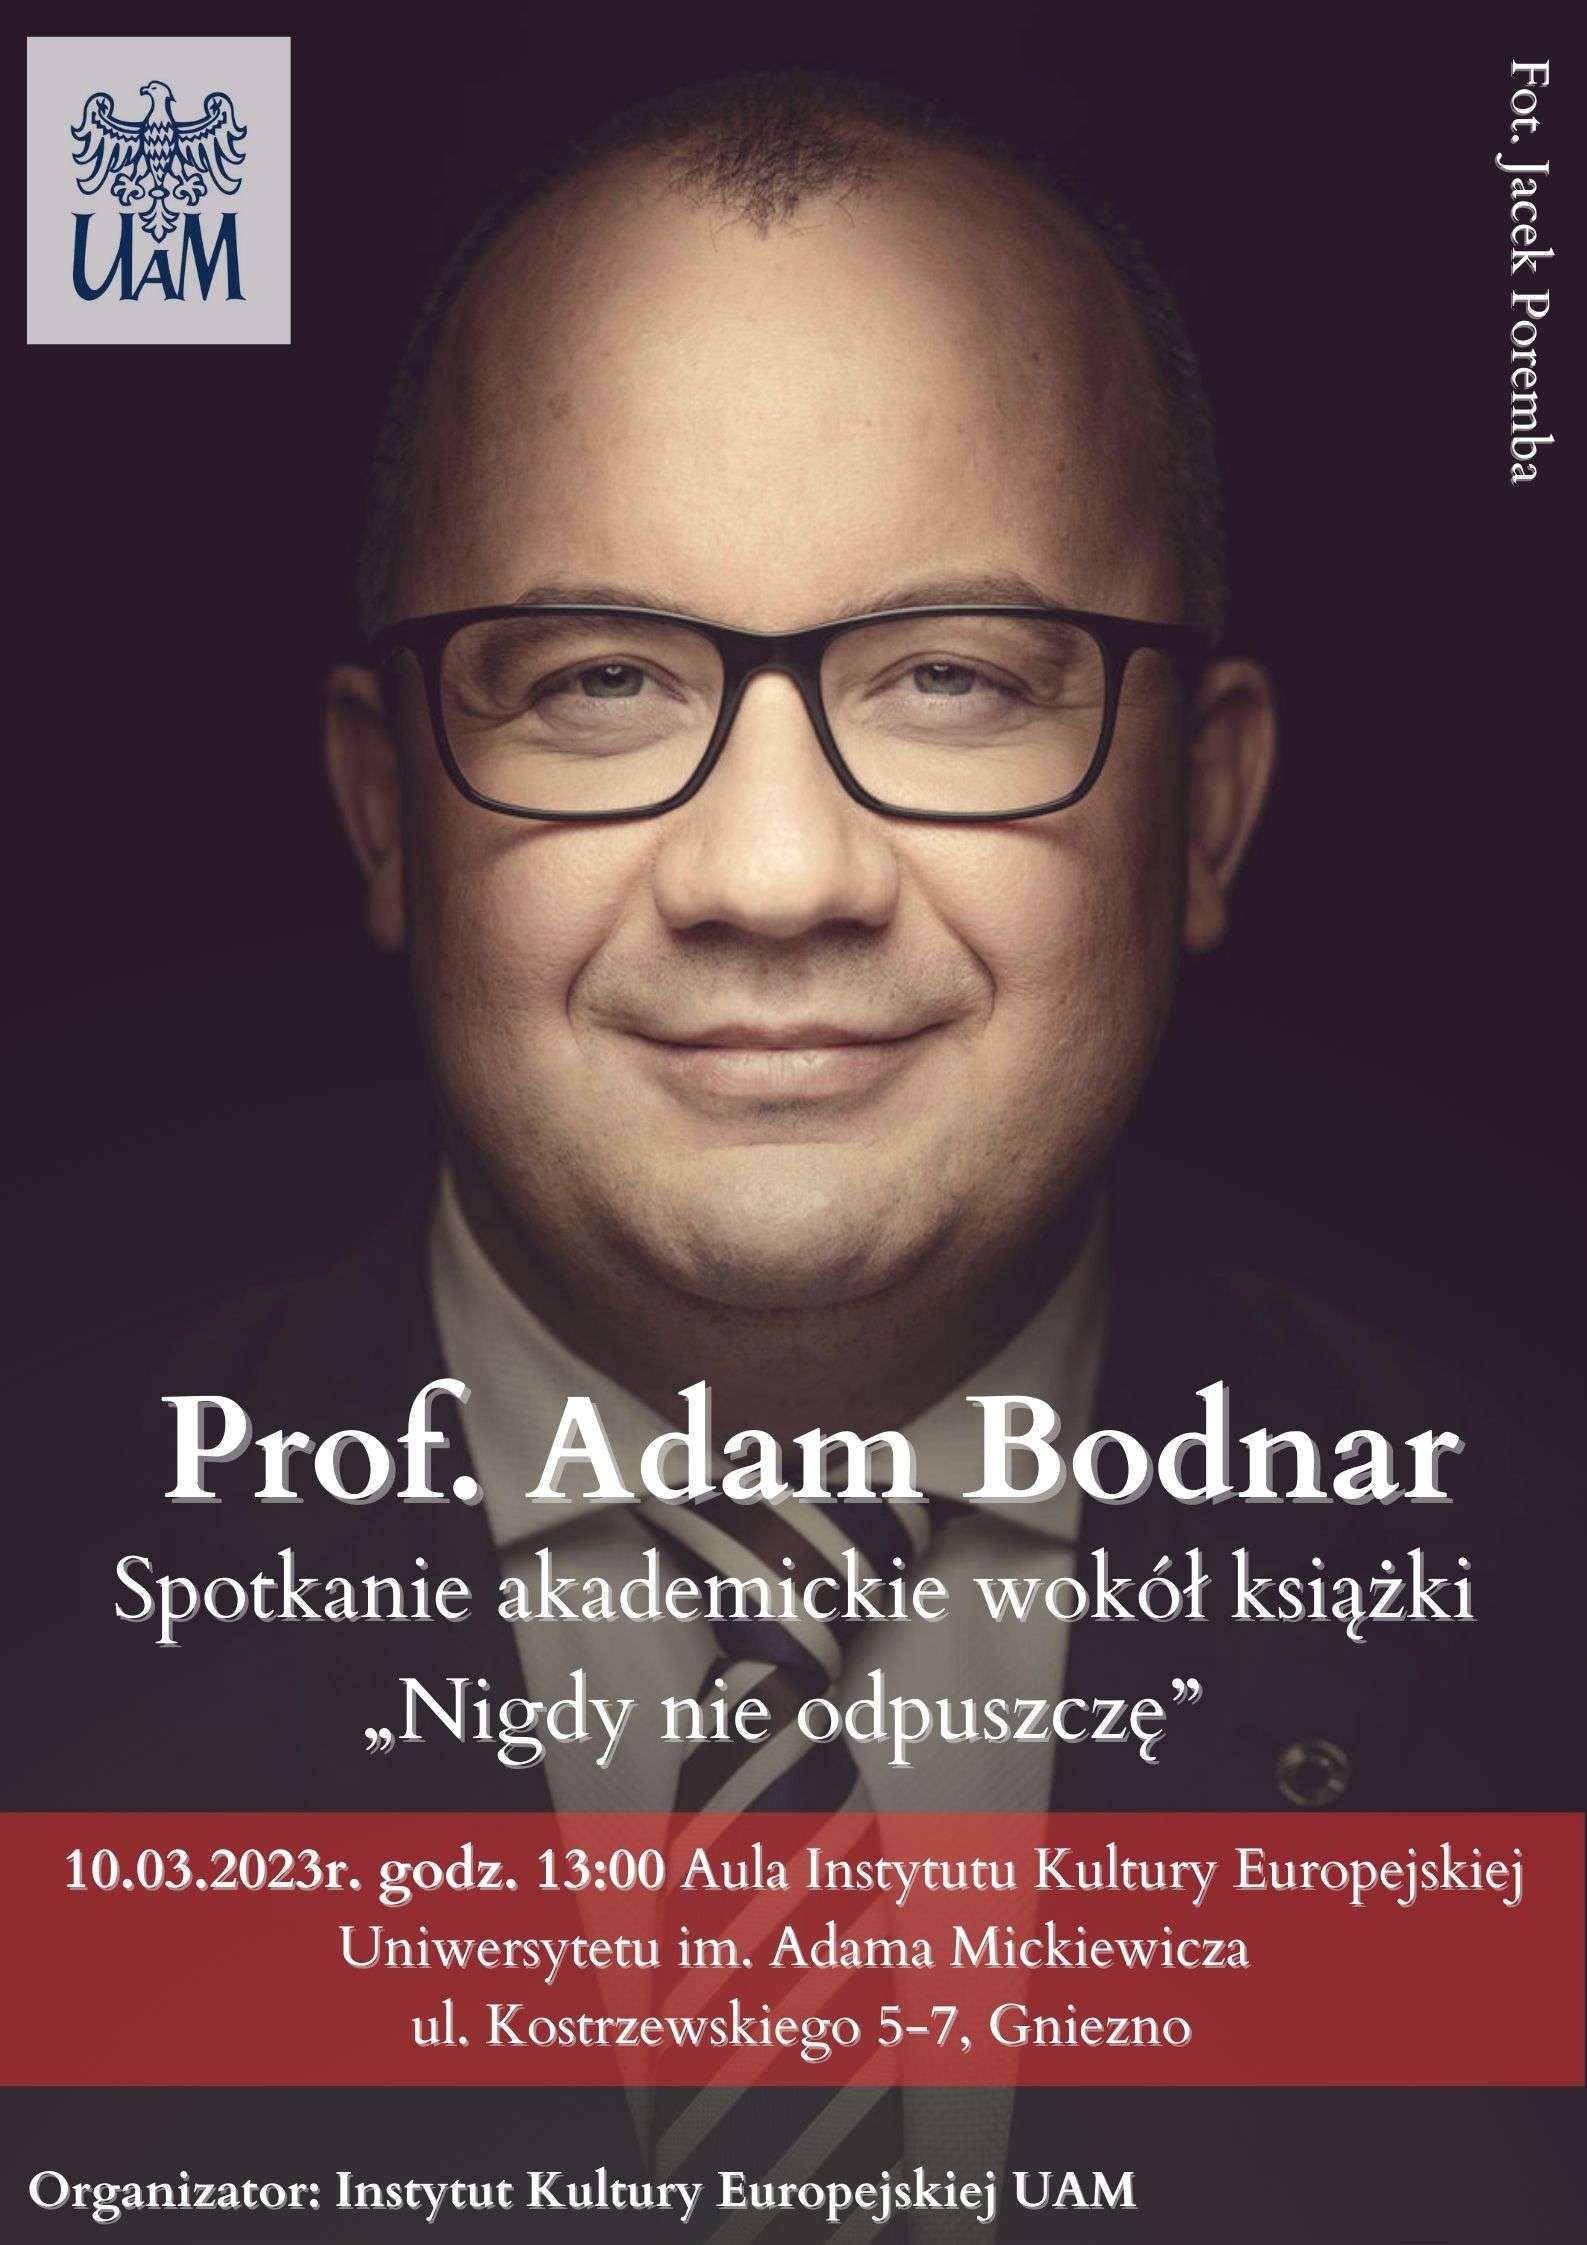 Spotkanie akademickie z prof. Adamem Bodnarem